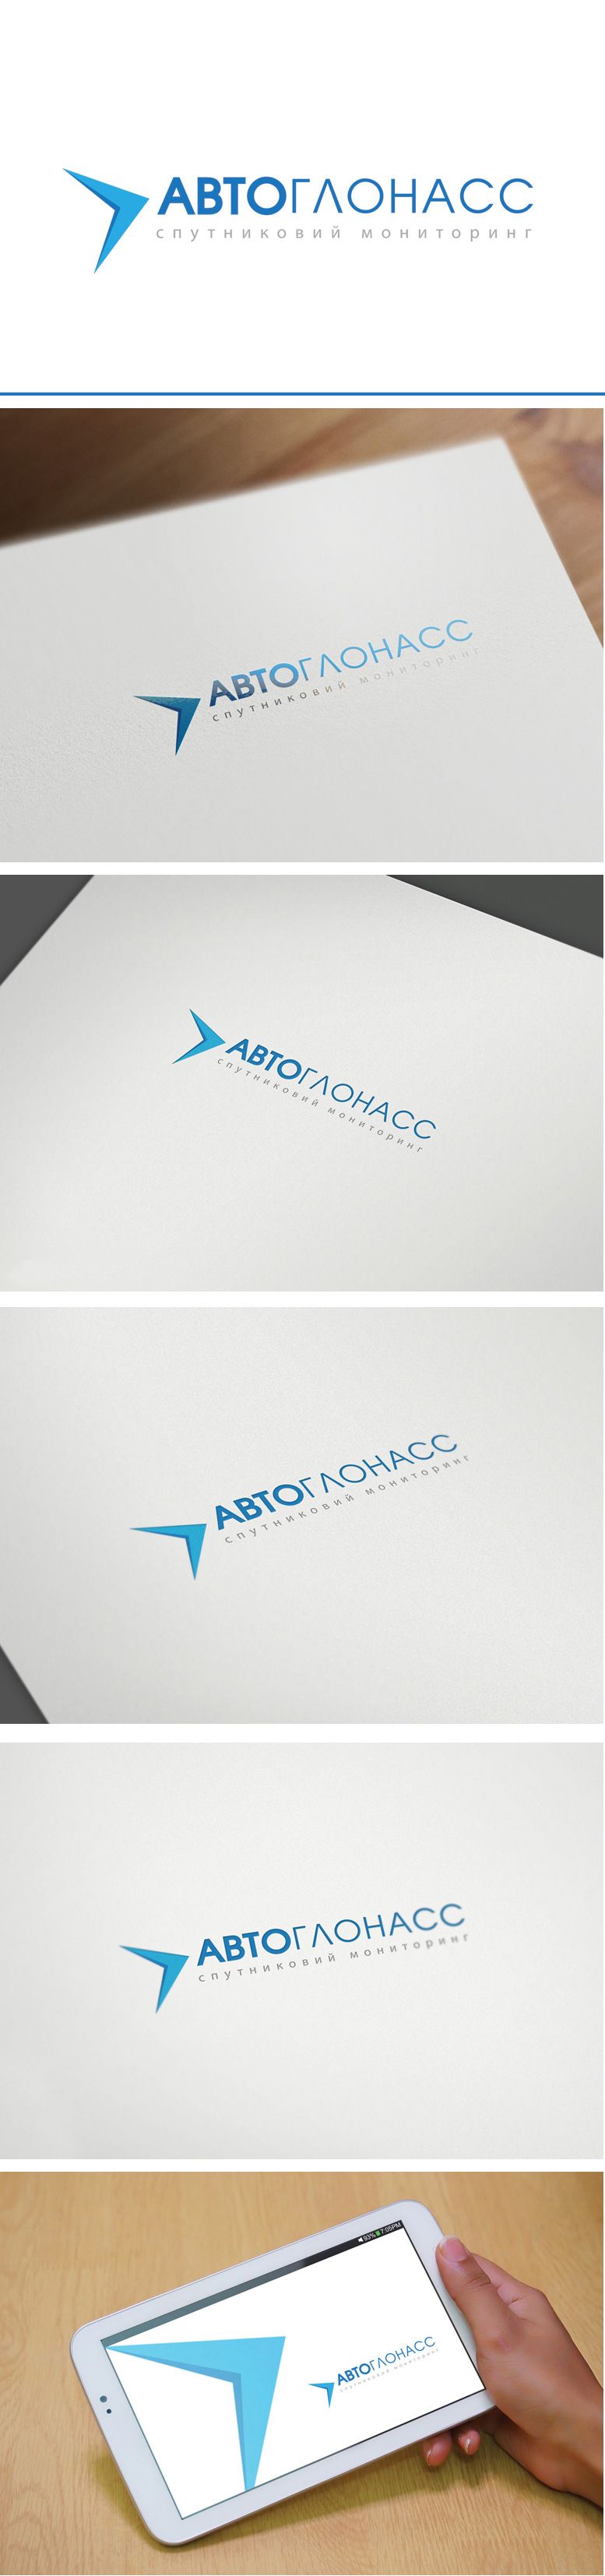 Логотип и фирменный стиль проекта АвтоГЛОНАСС - дизайнер GreenRed